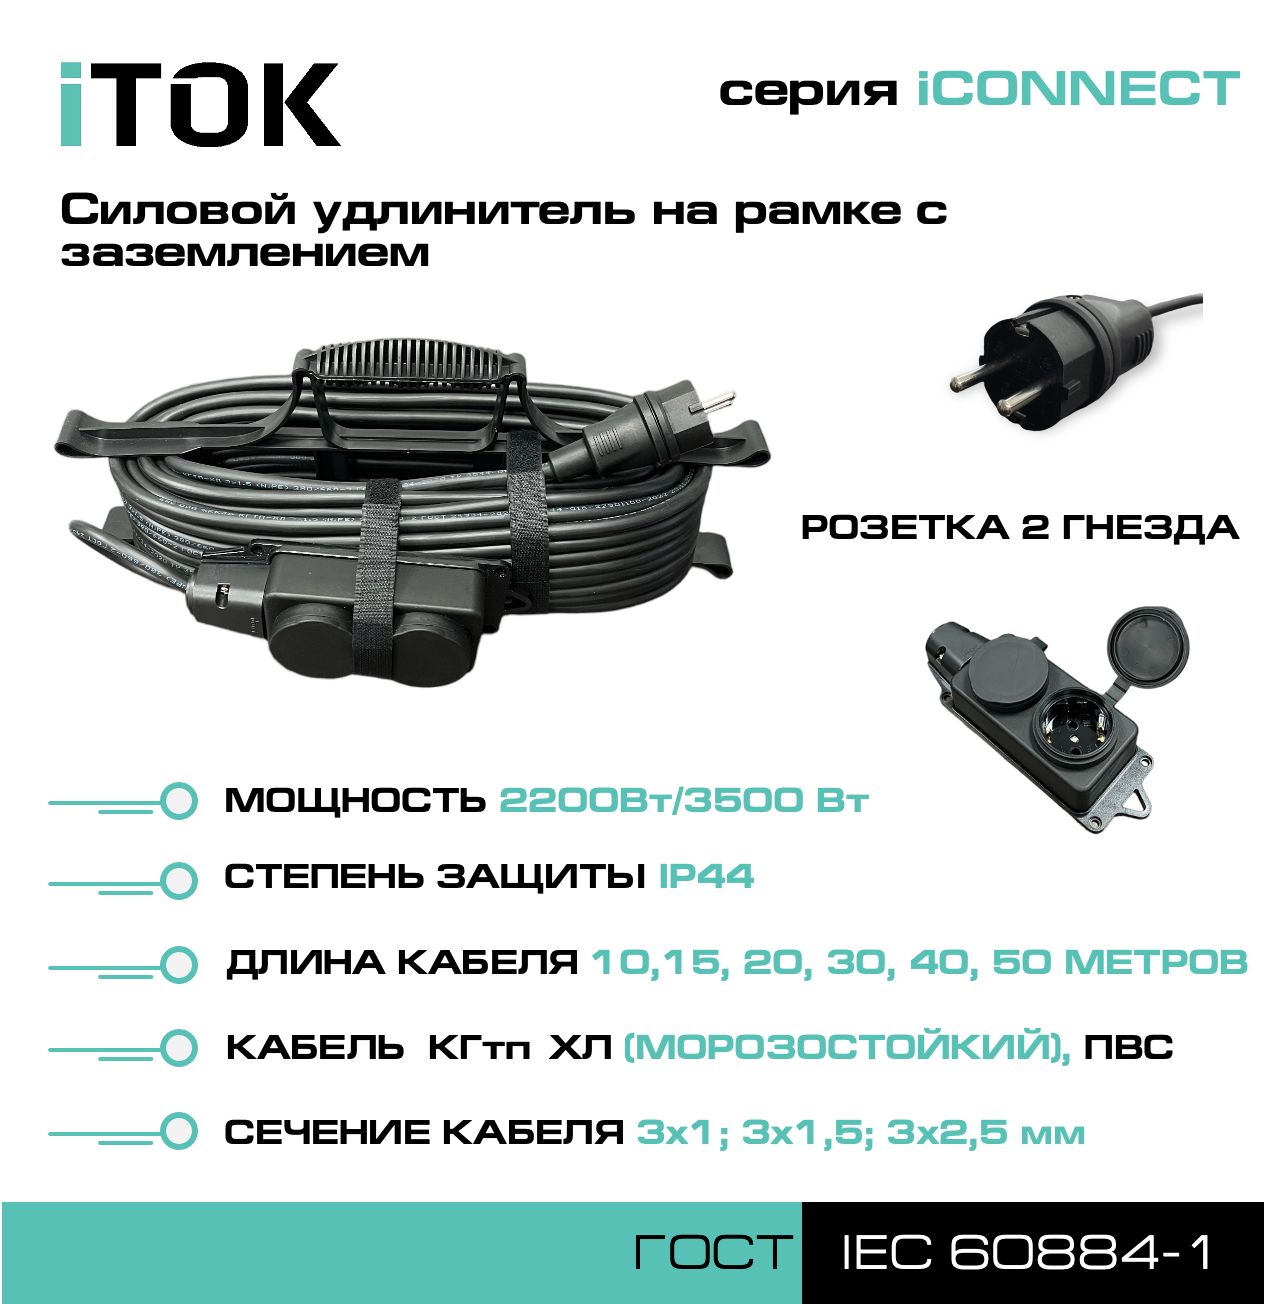 Удлинитель на рамке с заземлением серии iTOK iCONNECT ПВС 3х1 мм 2 гнезда IP44 30 м фигурный пазл в рамке